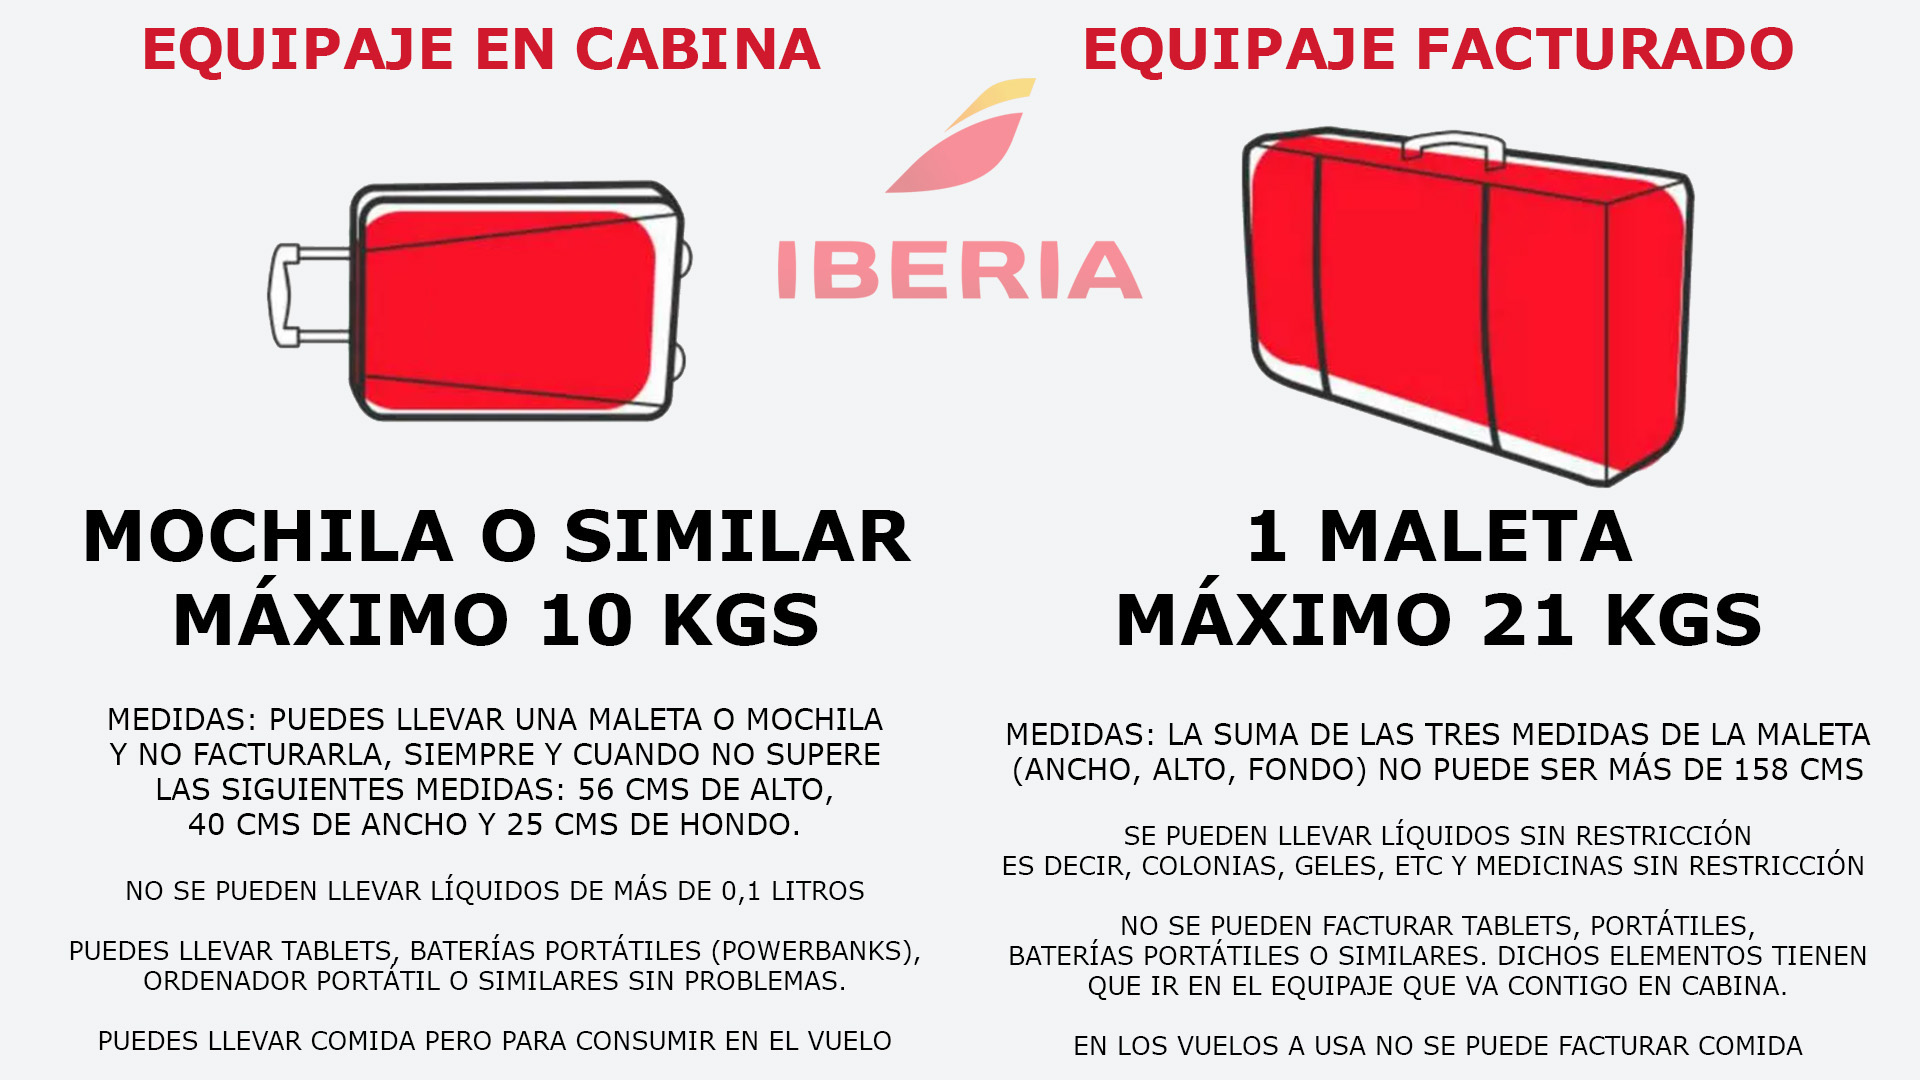 Restricciones de equipaje de Iberia